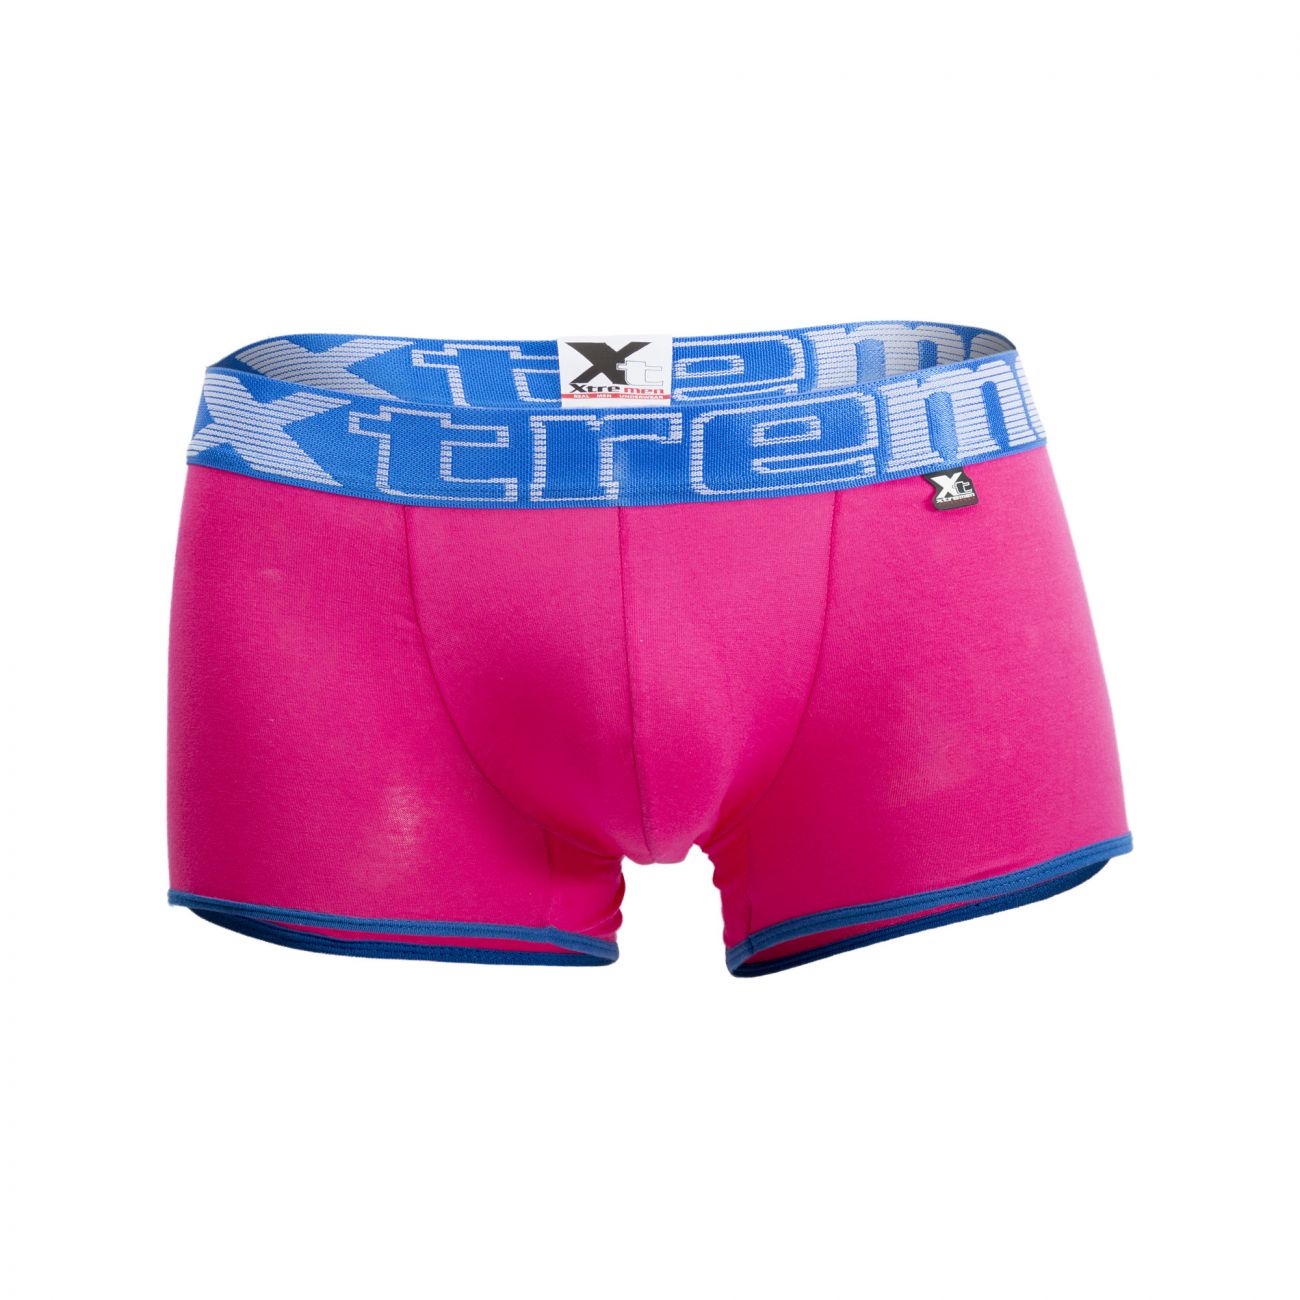 Xtremen 91027 Butt lifter Boxer Briefs